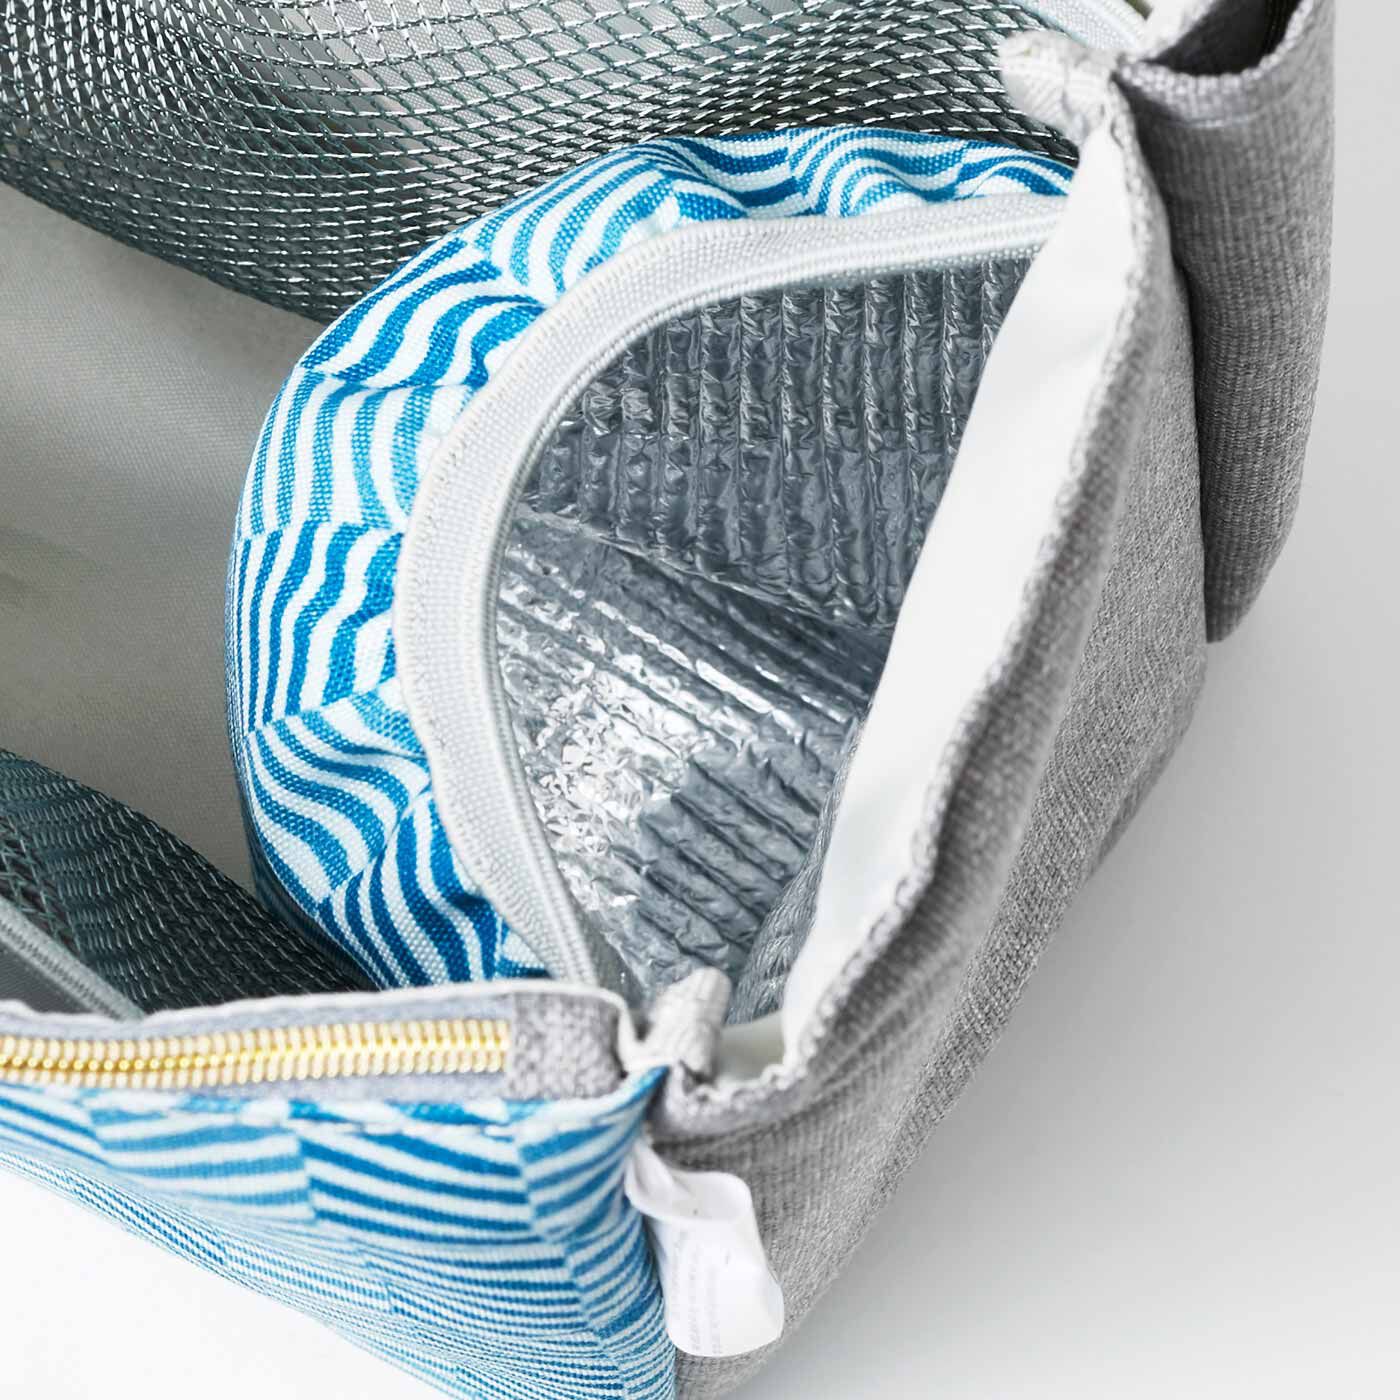 Real Stock|ラミプリュス　すっきり整とん トートバッグのためのインナーポケット〈テキスタイル柄〉|水筒や冷たいペットボトルの定位置に最適なアルミ蒸着ポケット。